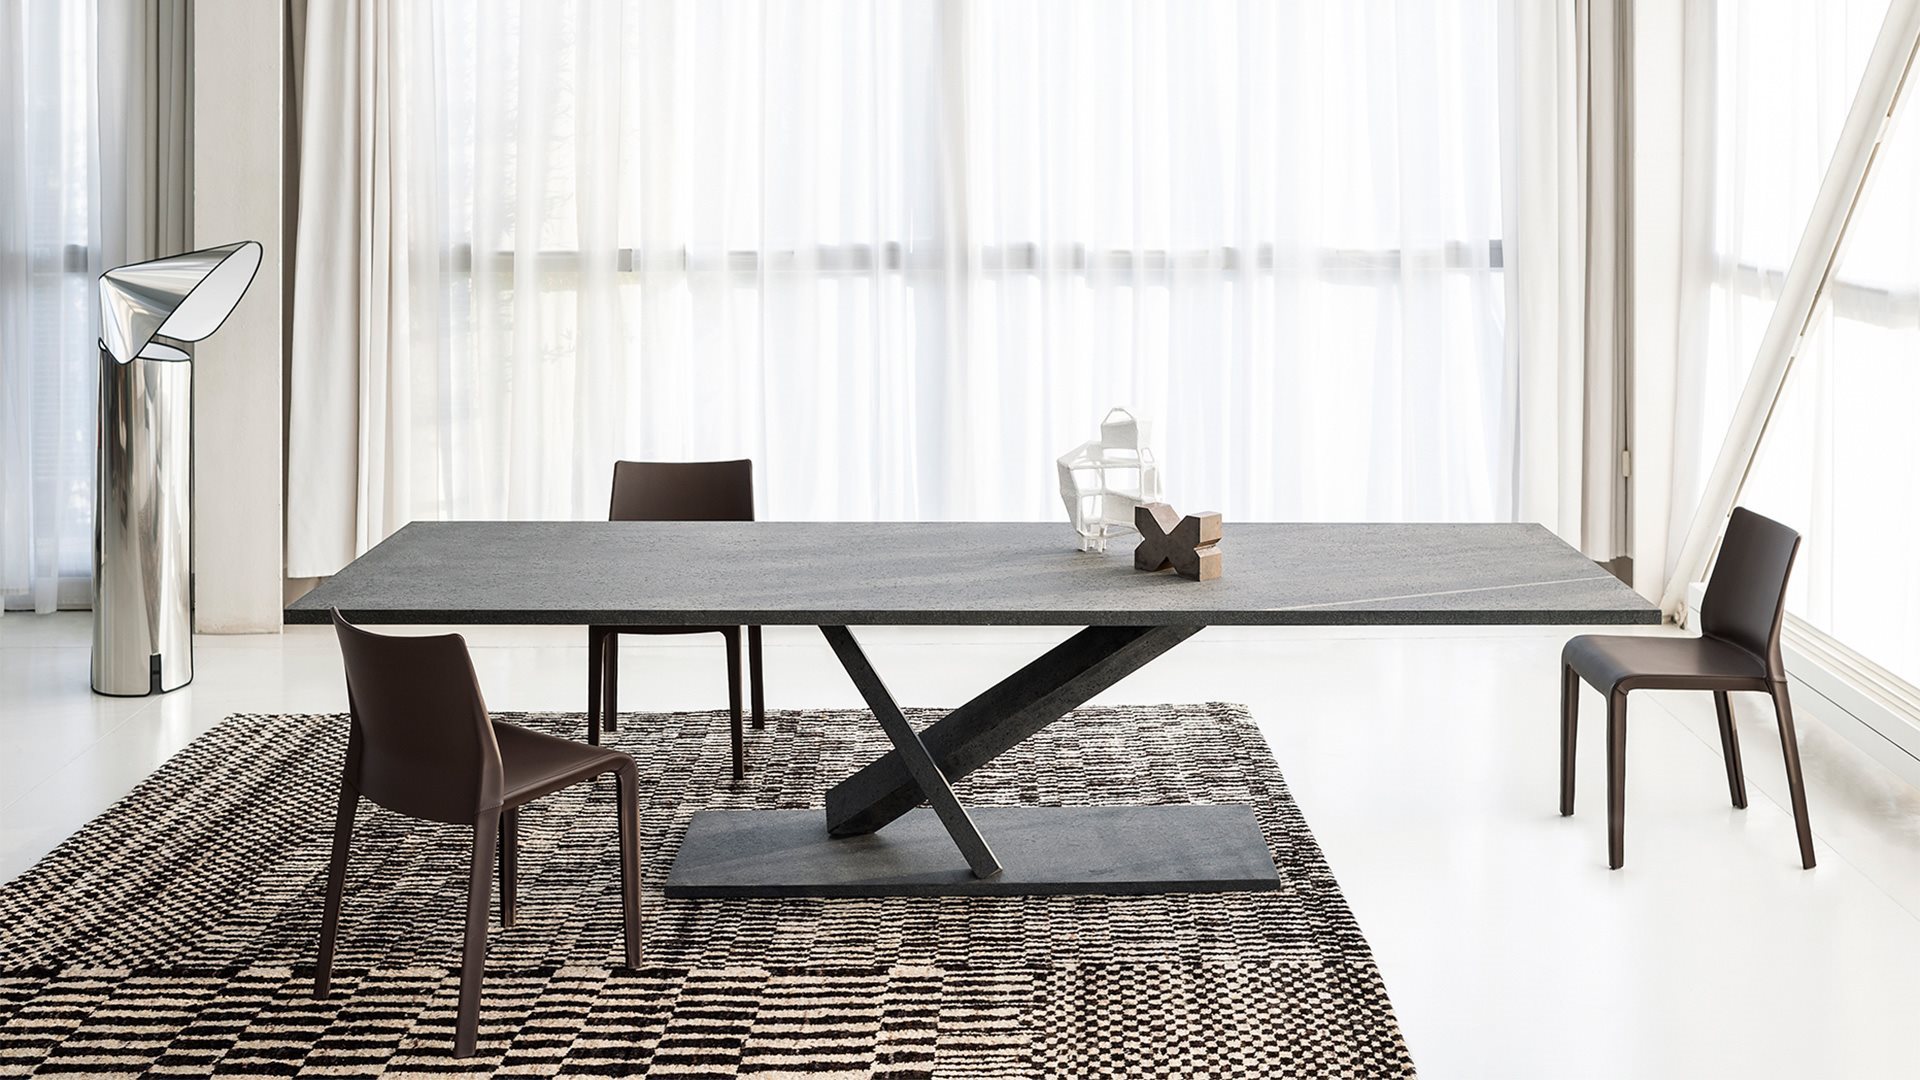 Italiaans design meubelen merken: Desalto